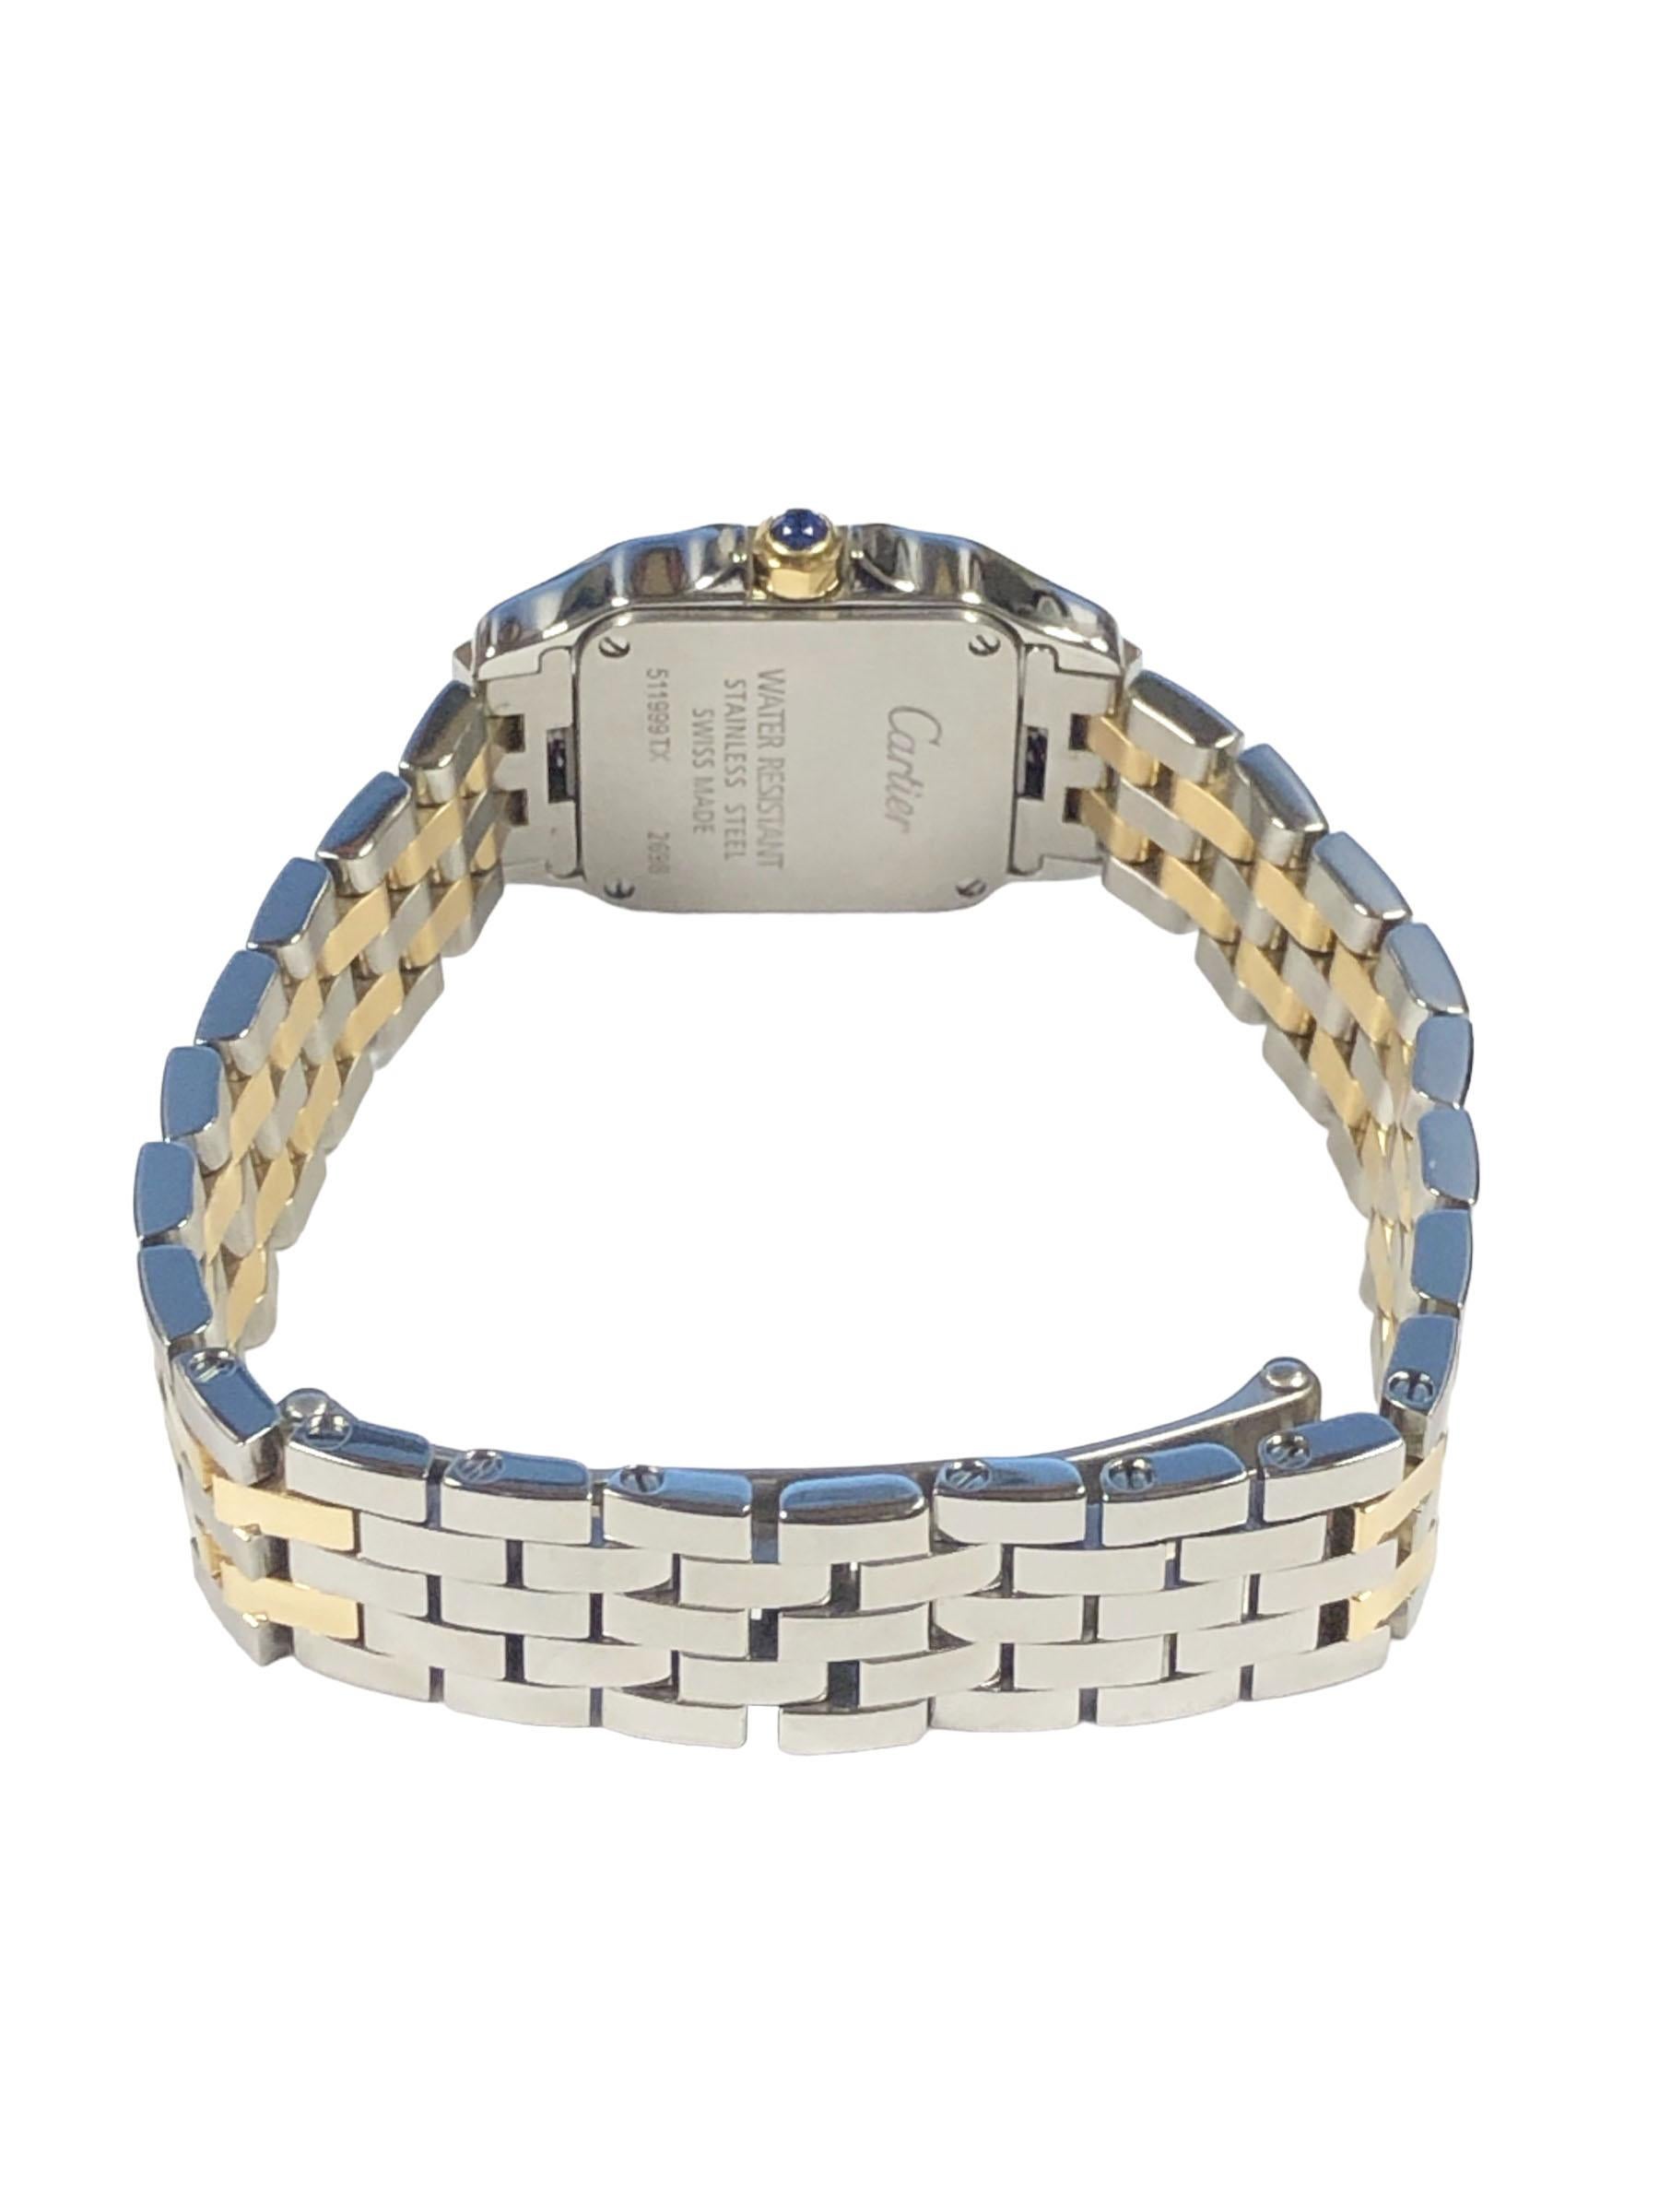 Cartier Santos Demoiselle Steel and Yellow Gold Ladies Quartz Wrist Watch 1